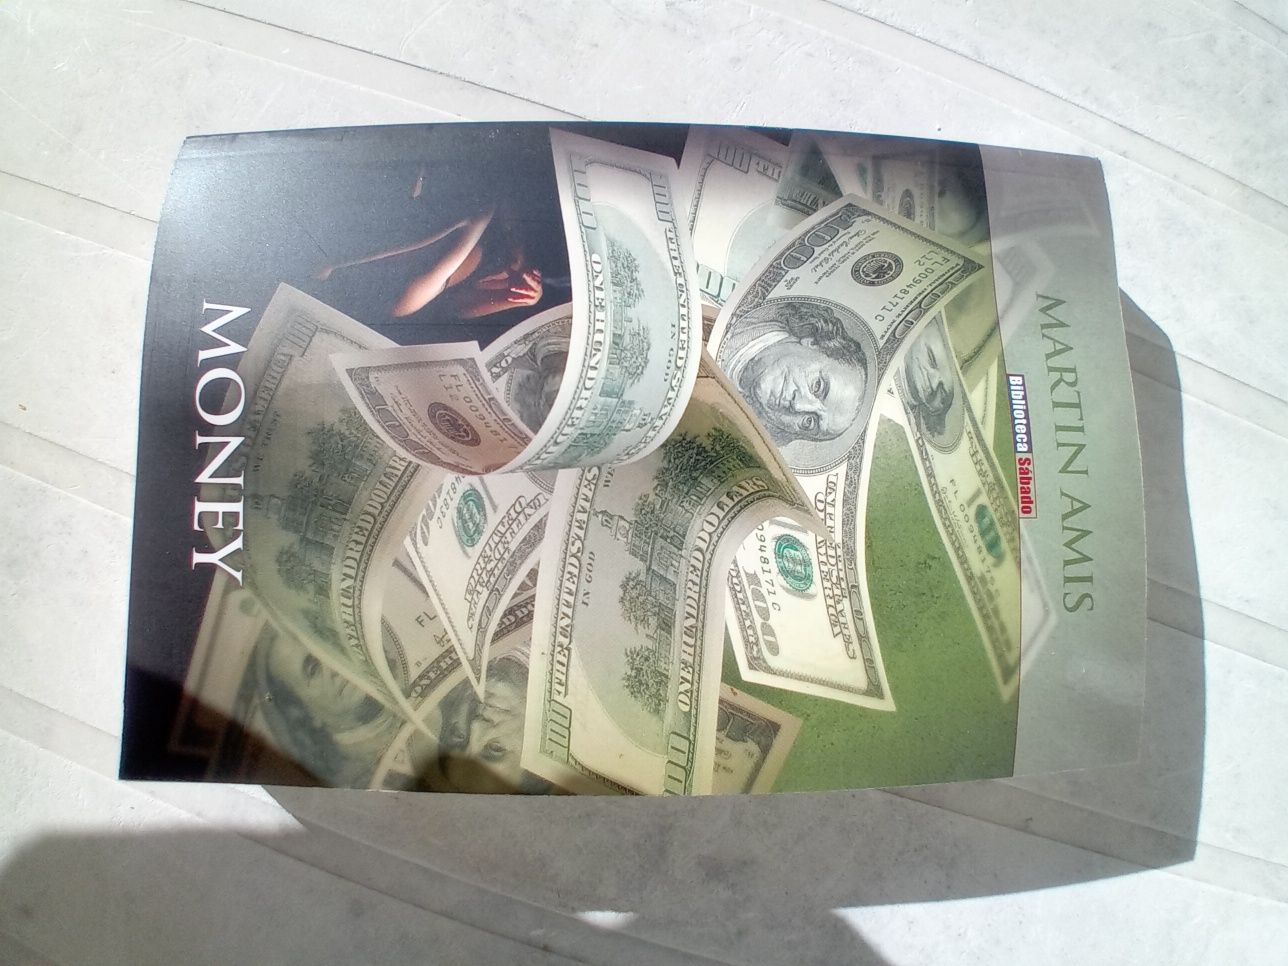 Livro "Money" de Martin Amis